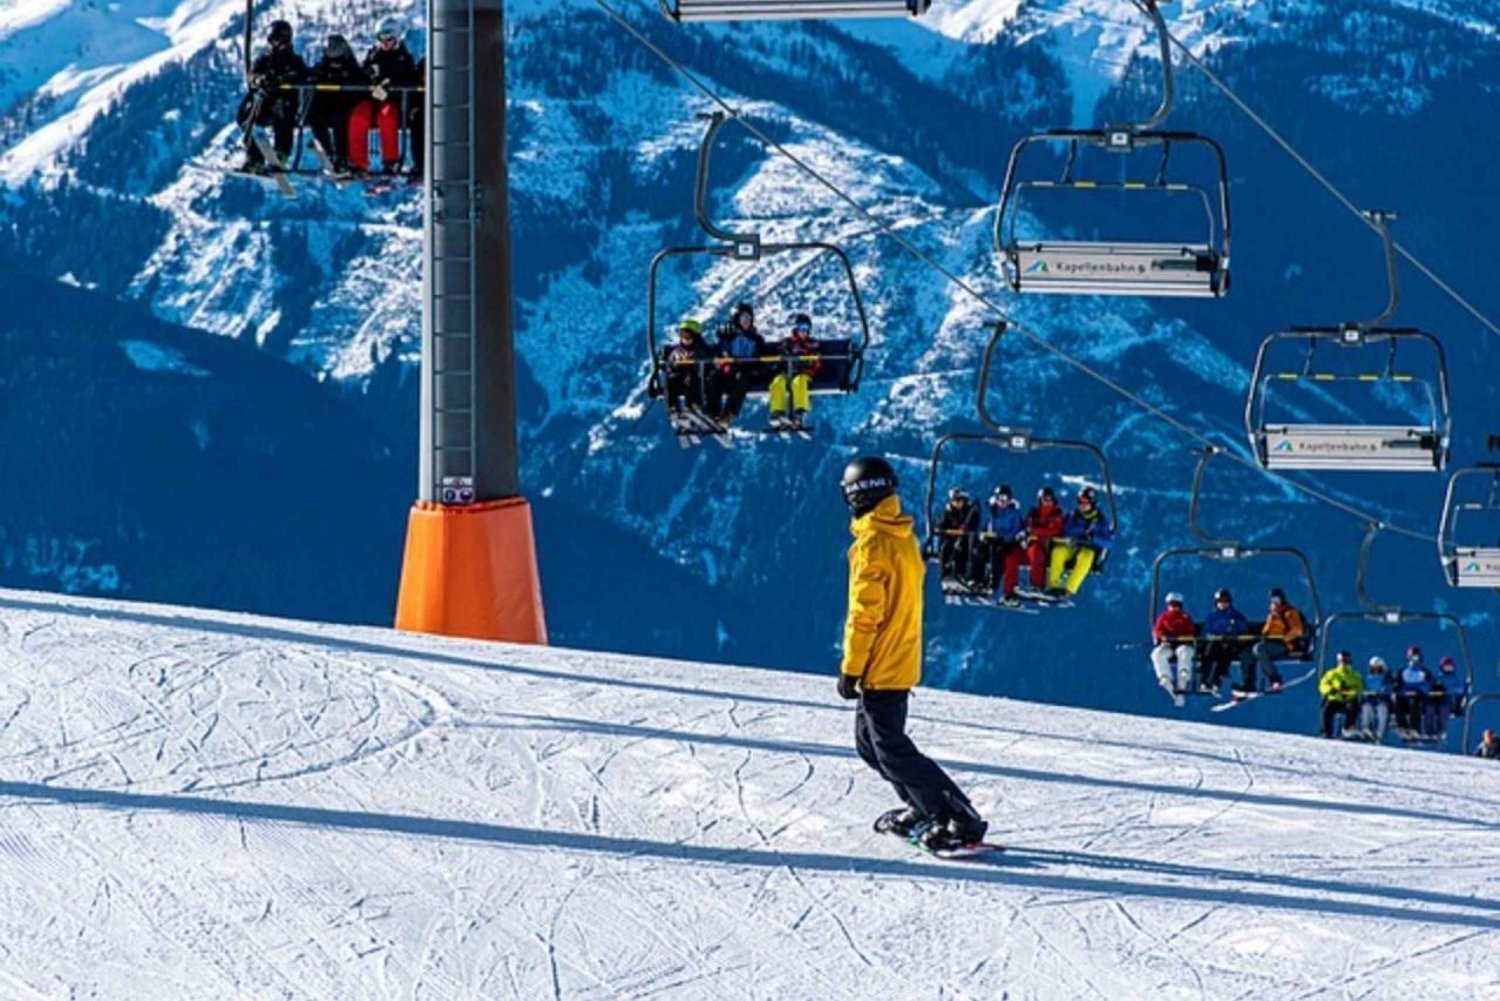 Les Menuires: Private Ski Safari with transport